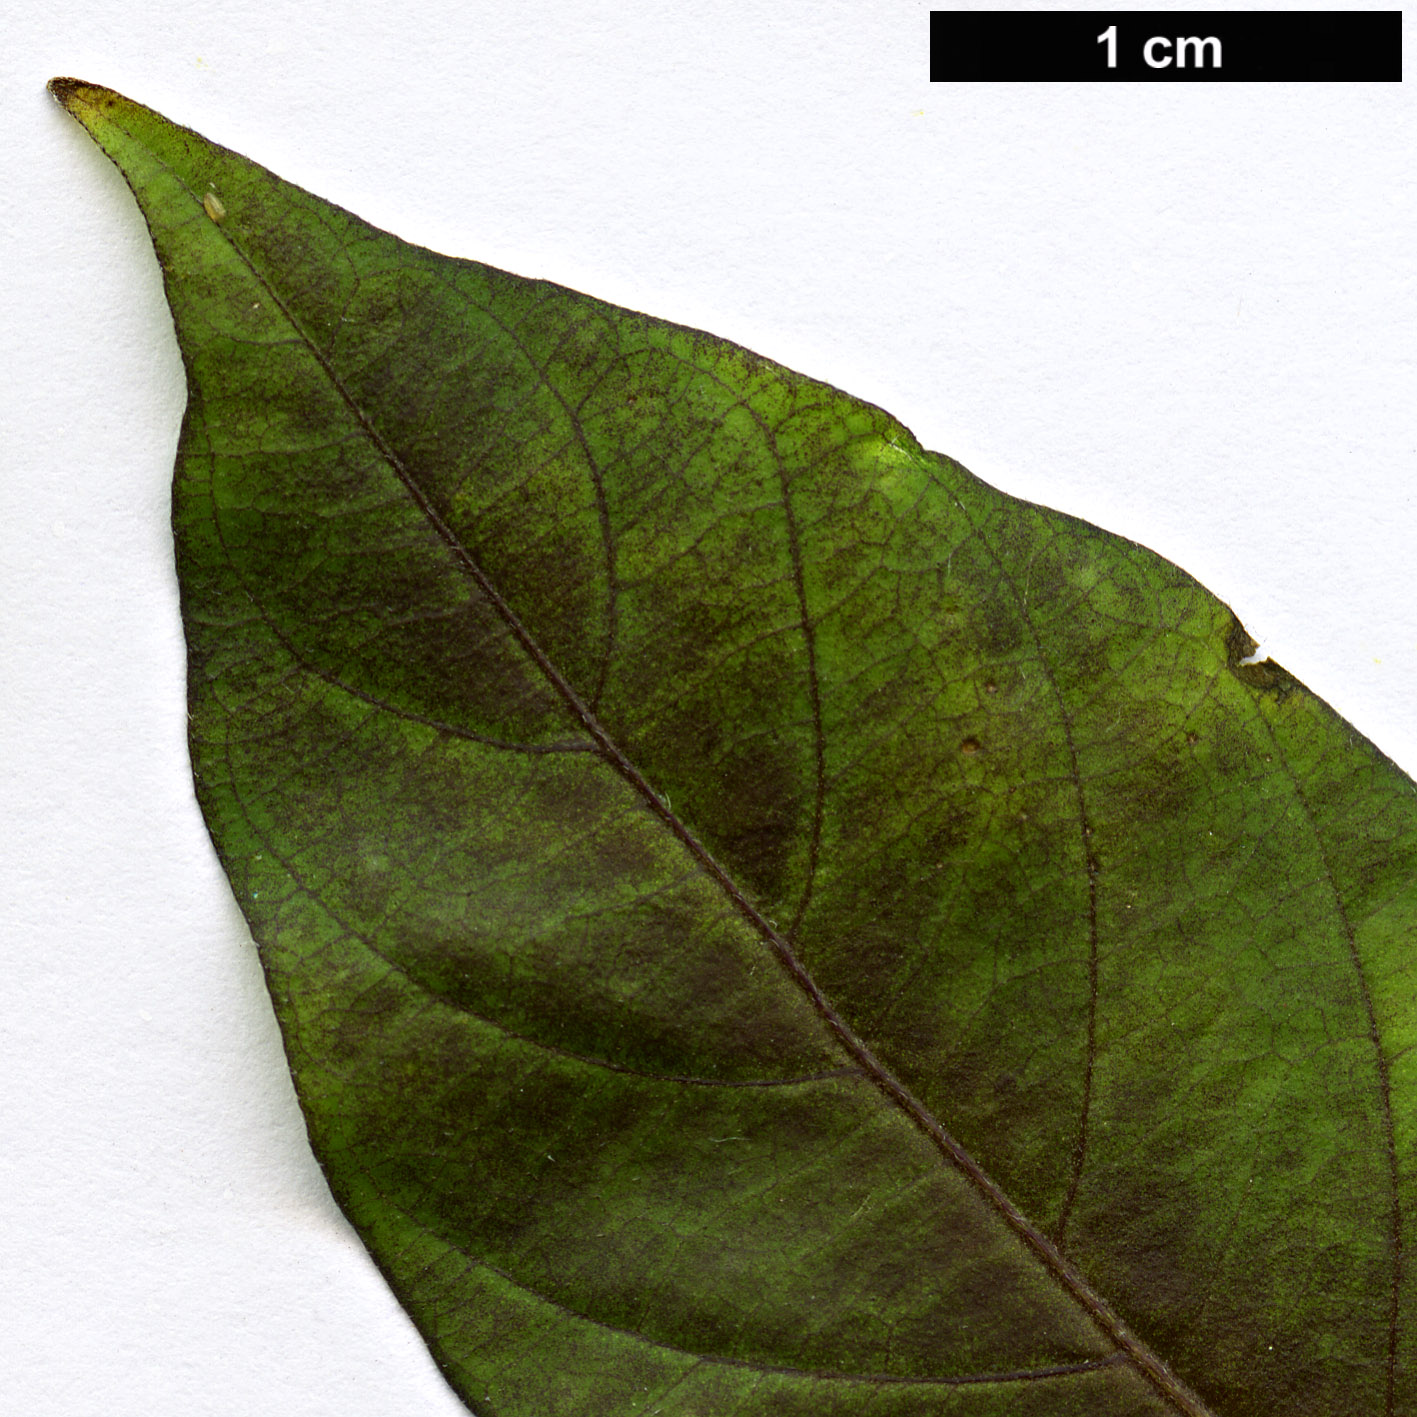 High resolution image: Family: Solanaceae - Genus: Capsicum - Taxon: chinense